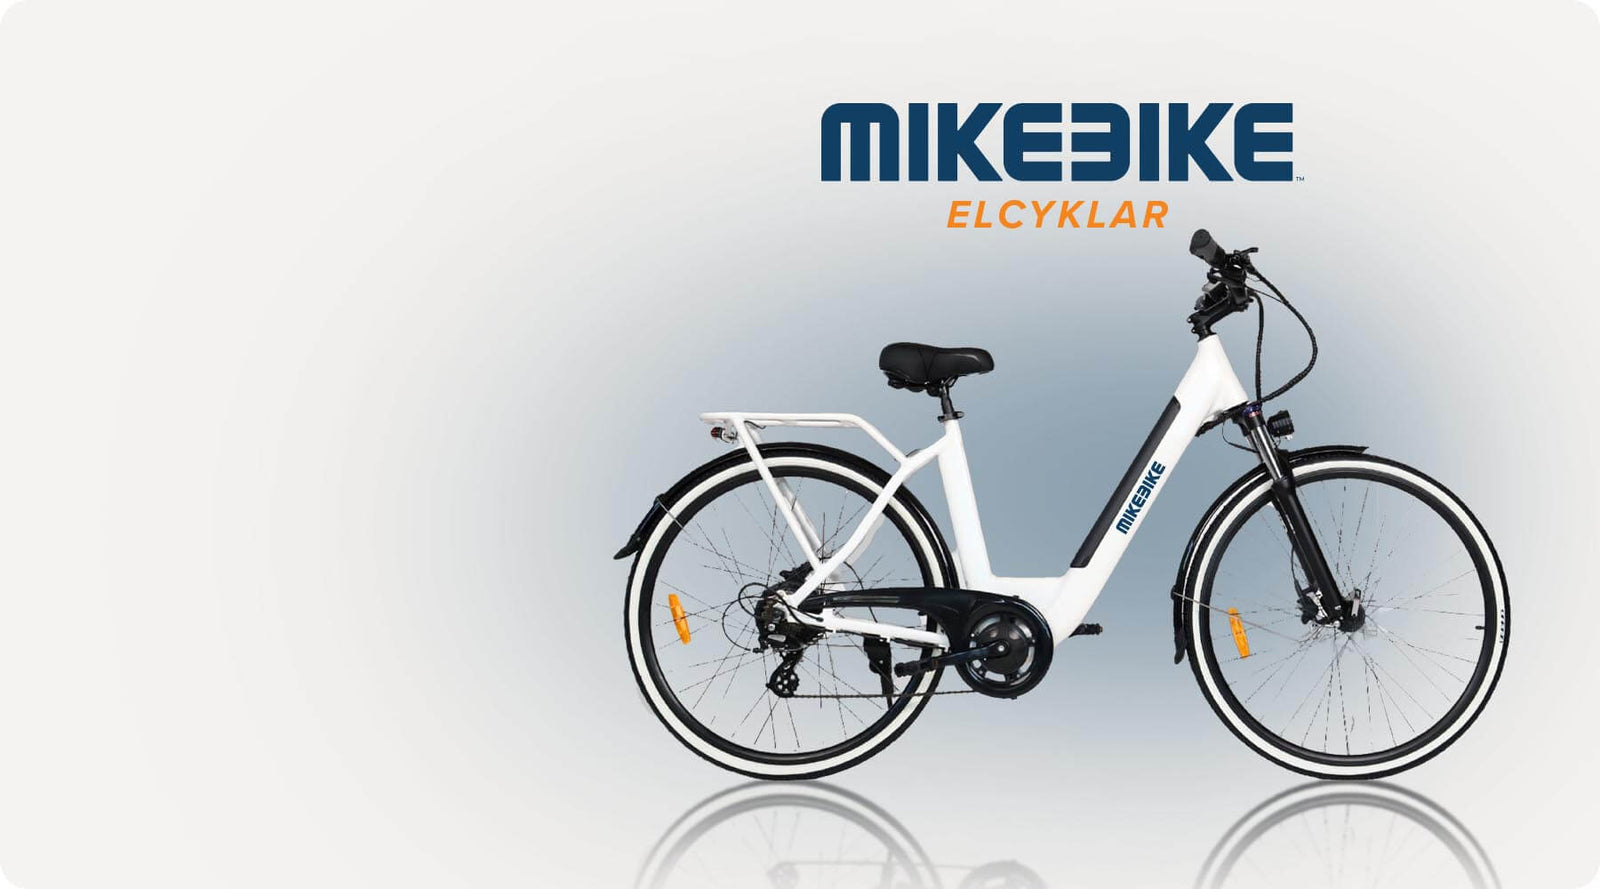 MIKEBIKE.SE – City Elcyklar och e-bikes till bäst pris i Norden